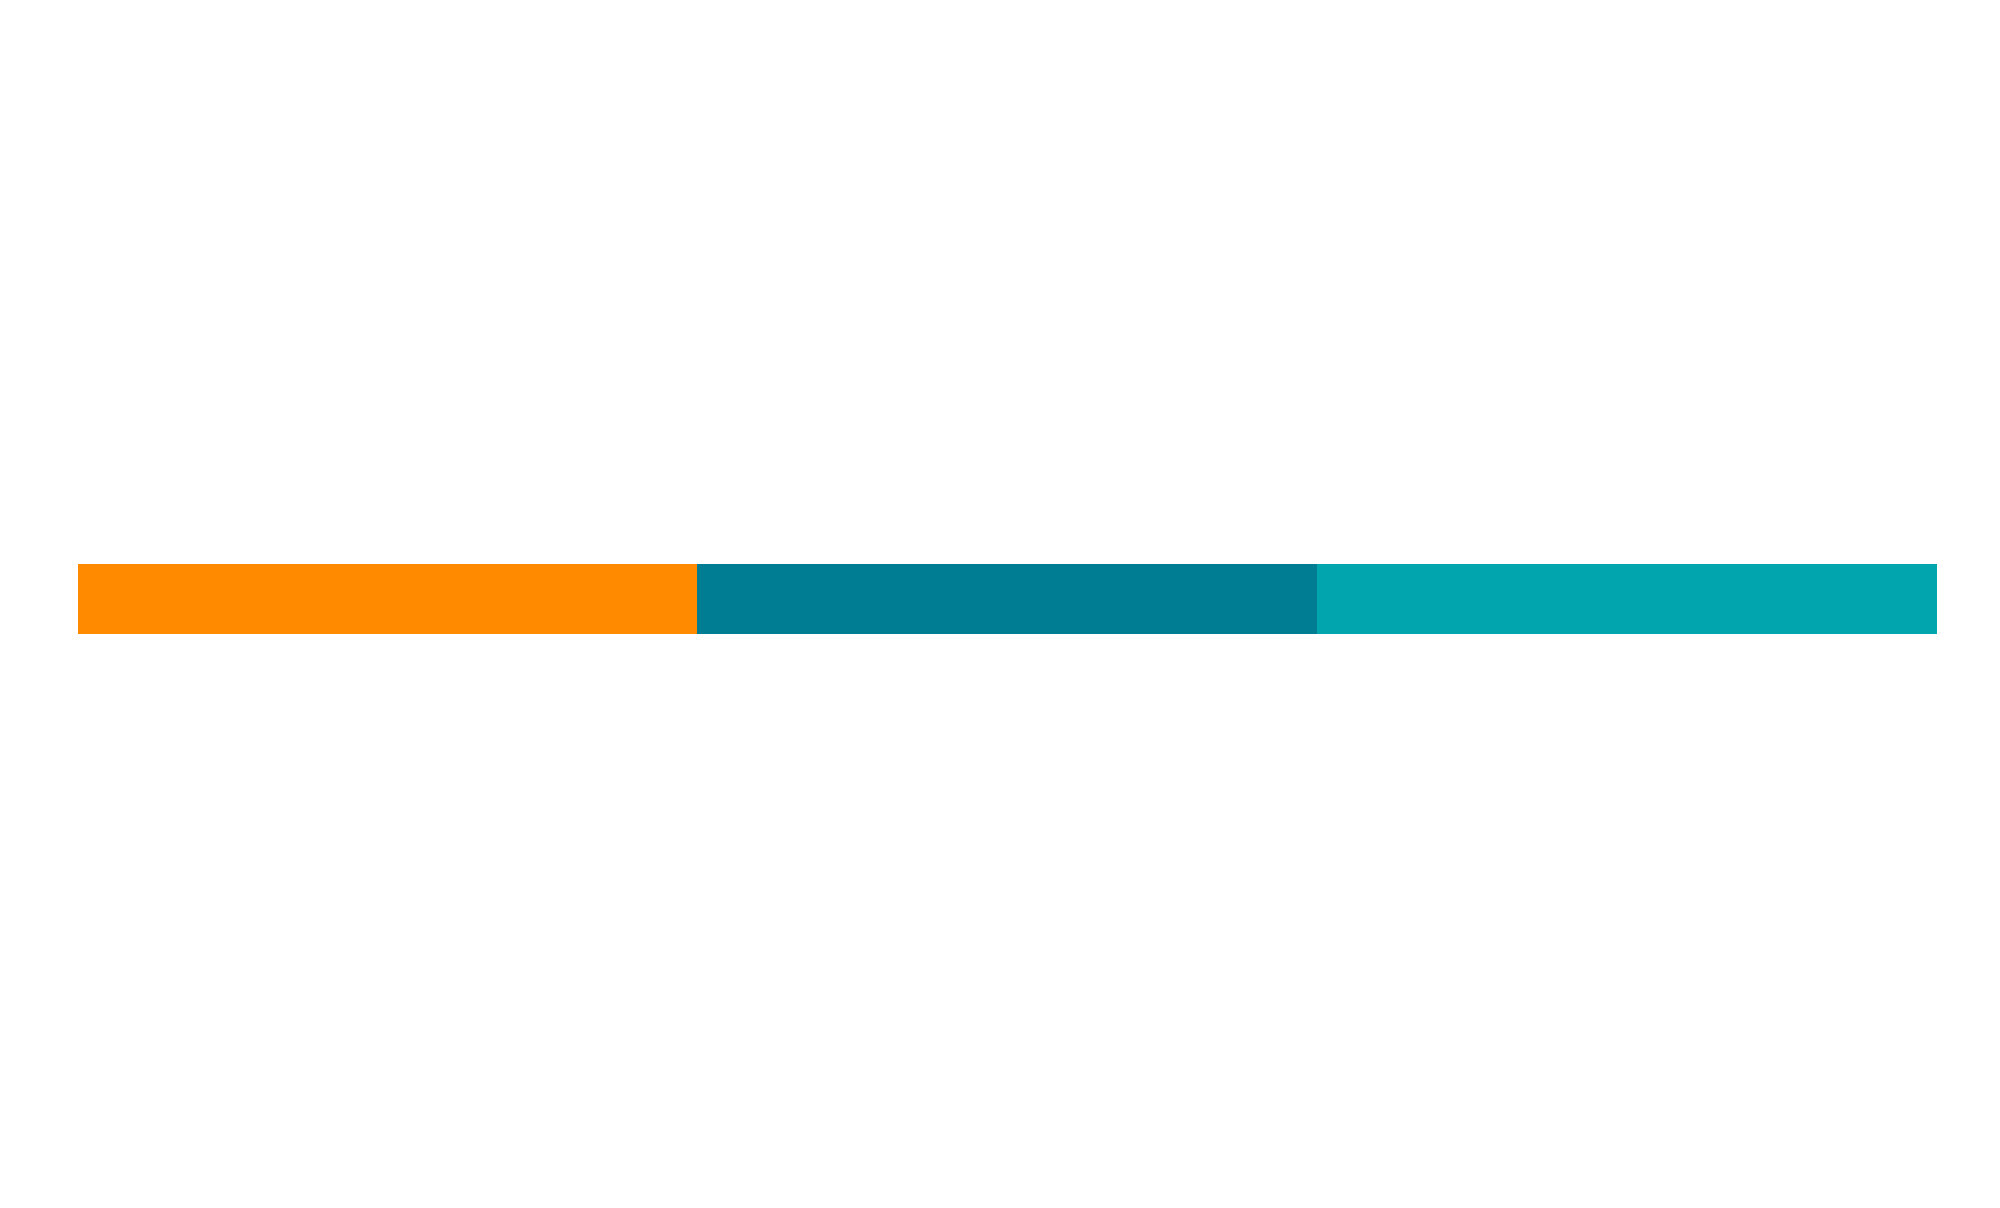 ISEHF Jesuita logo